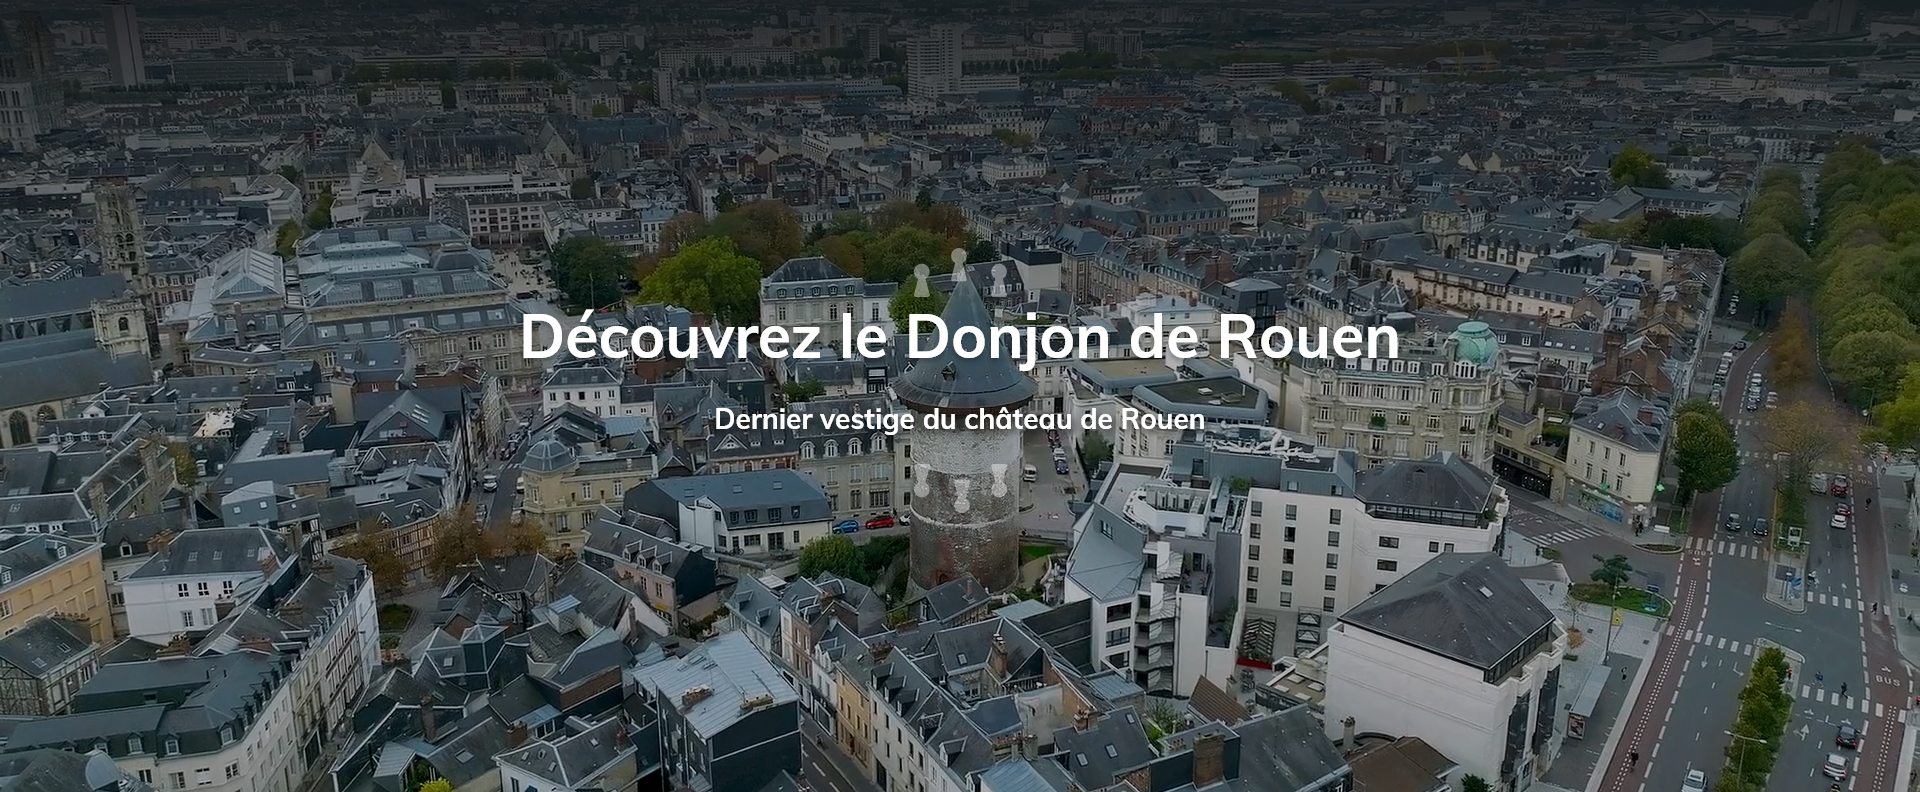 Donjon de Rouen